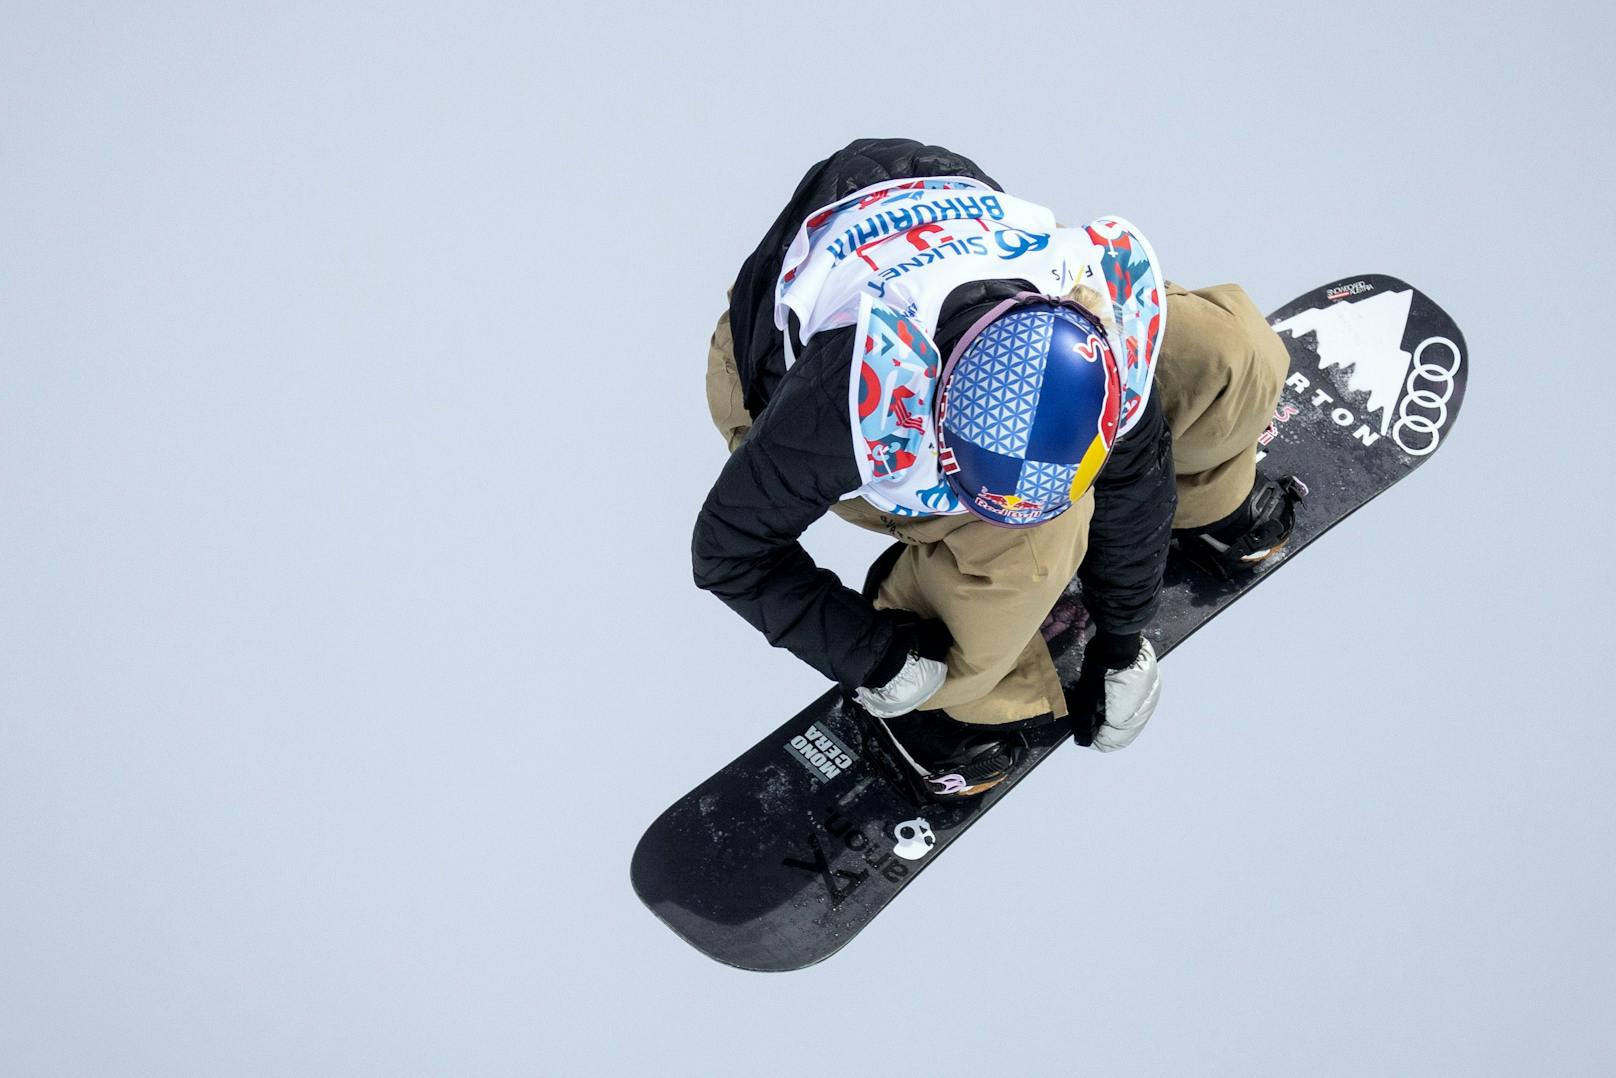 Gasser verpasst Medaille bei der Snowboard-WM